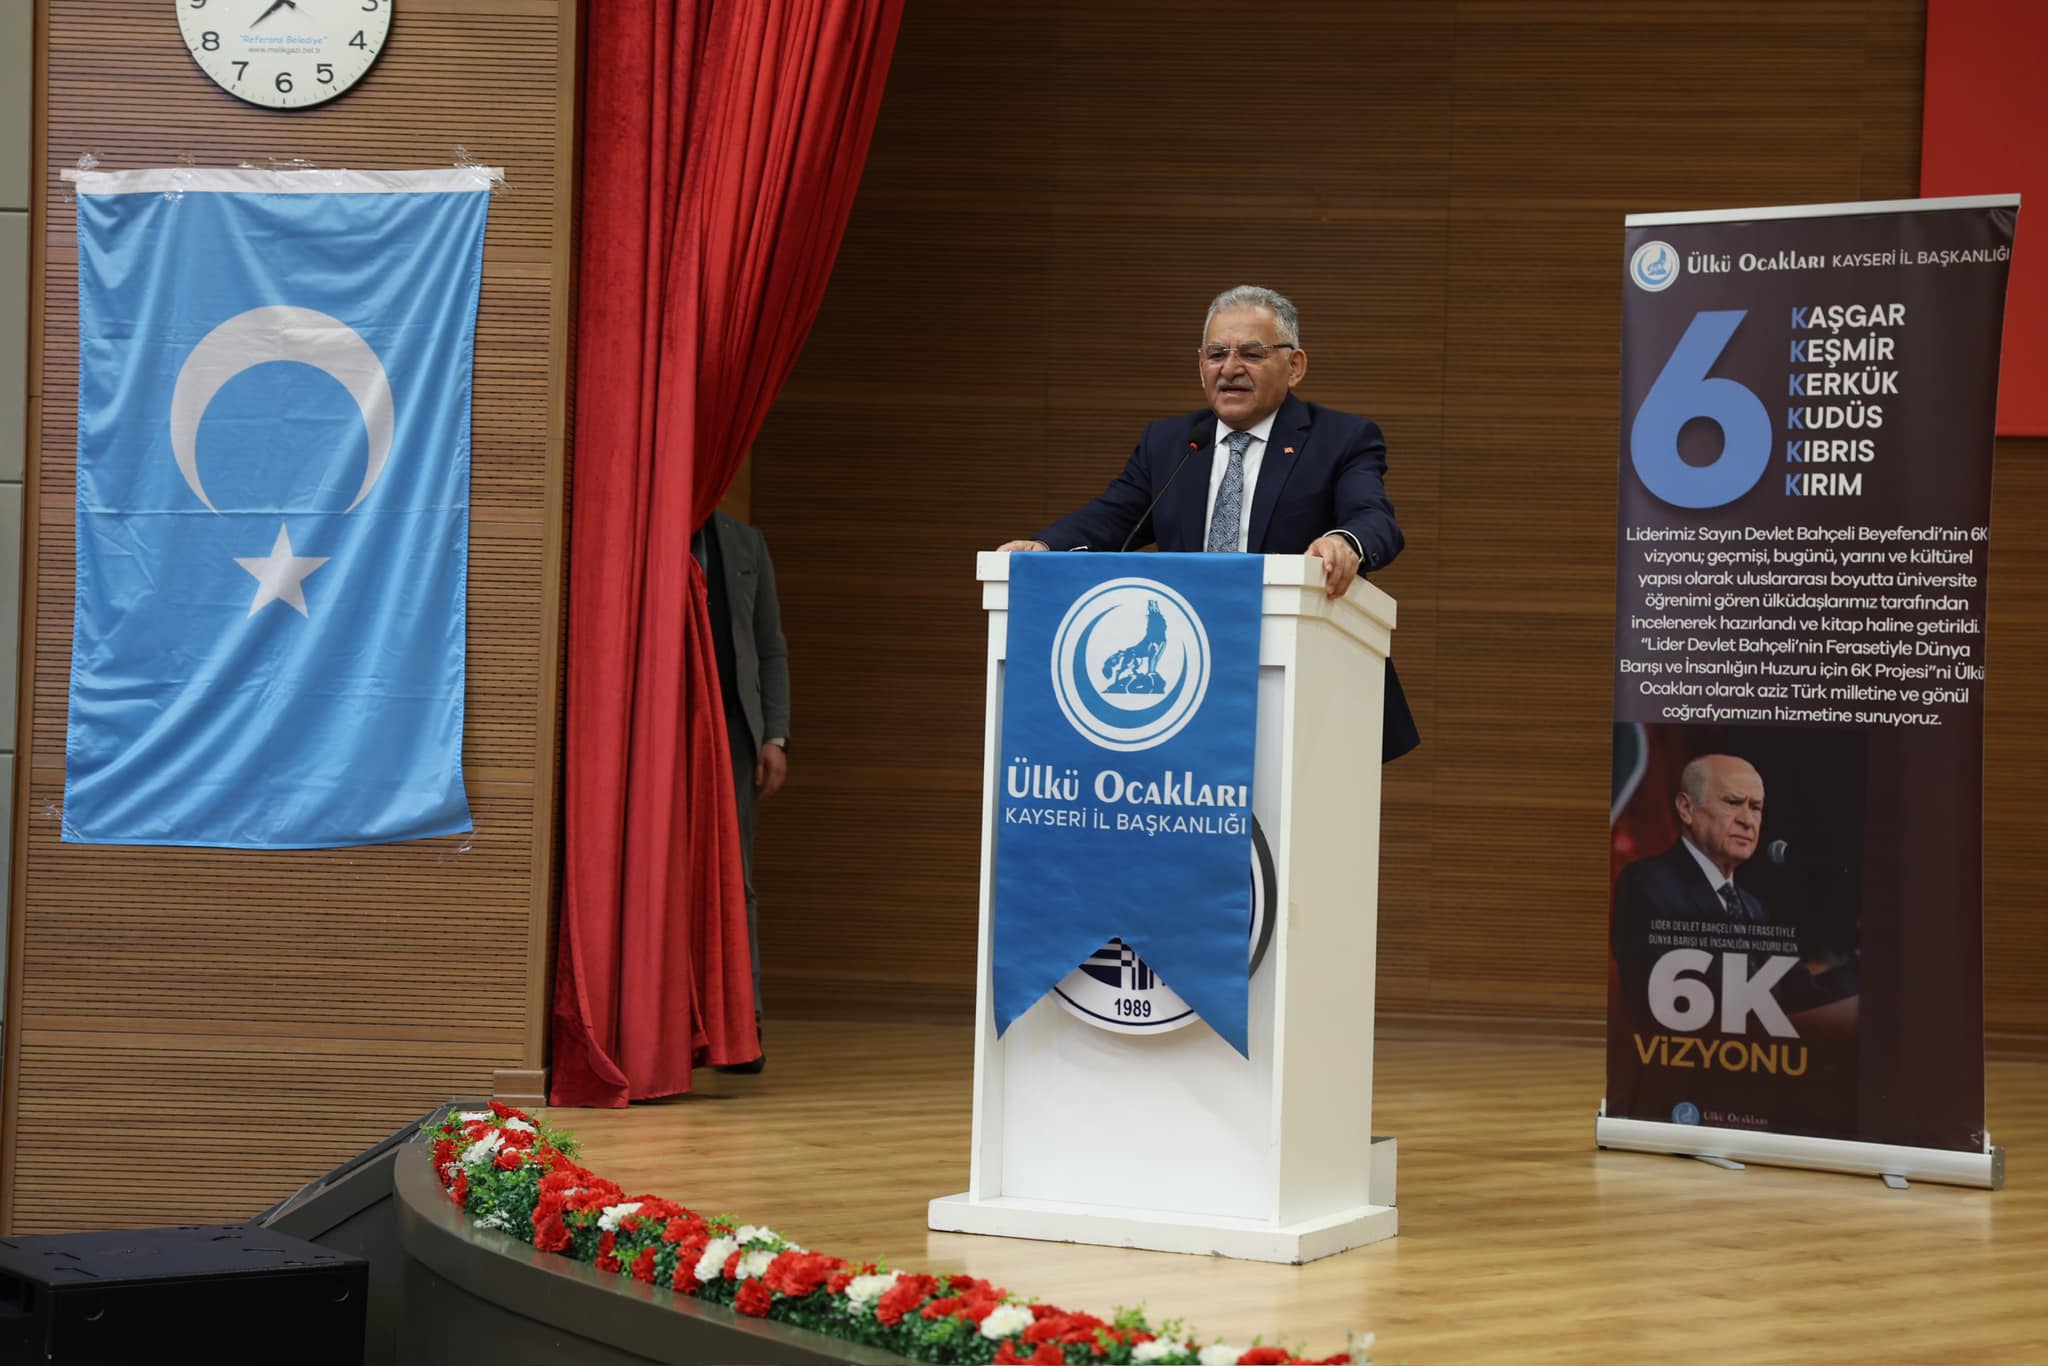 Başkan Büyükkılıç, “6K vizyonu Işığında Kaşgar” Konferansına katıldı